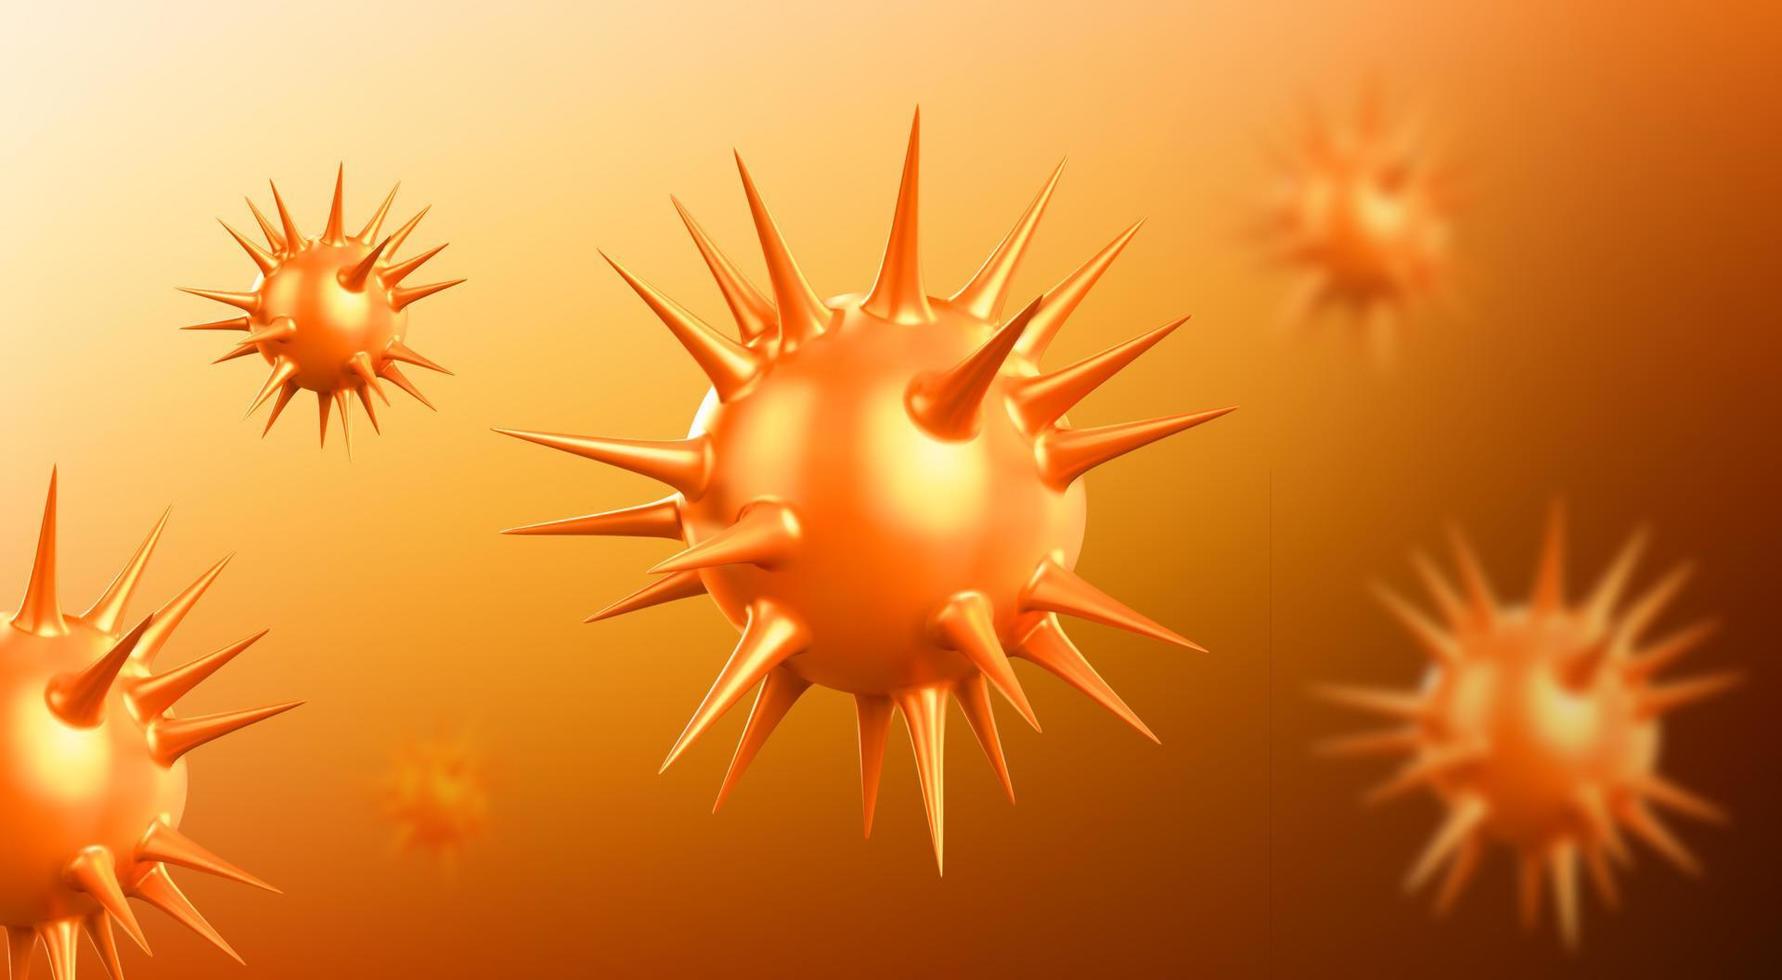 vírus corona de fundo de coronavírus ou células sars vetor